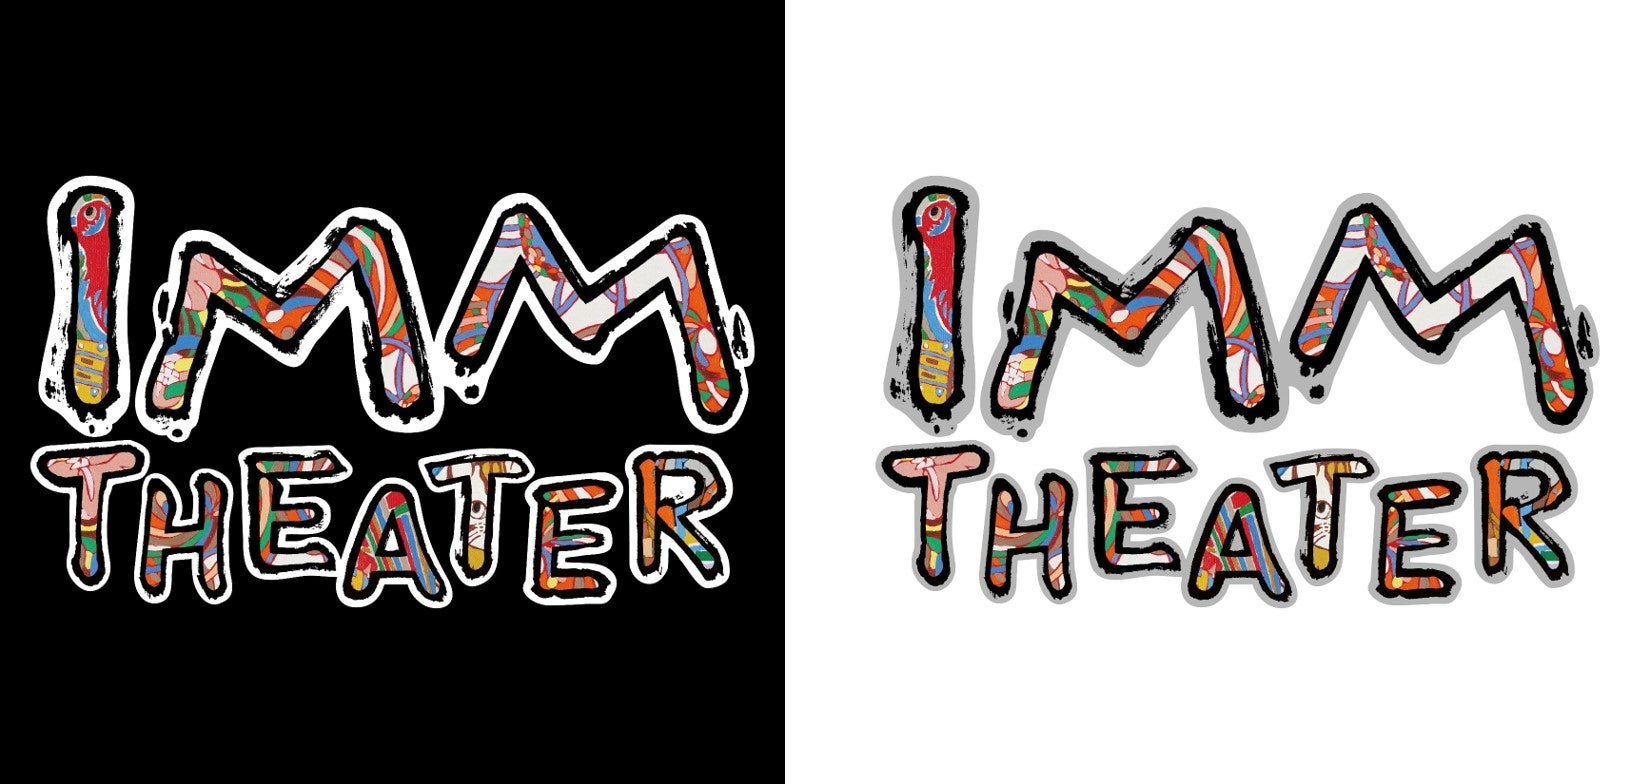 IMM THEATER 劇場ロゴが決定薬師寺長老の書とジミー大西のアートを融合